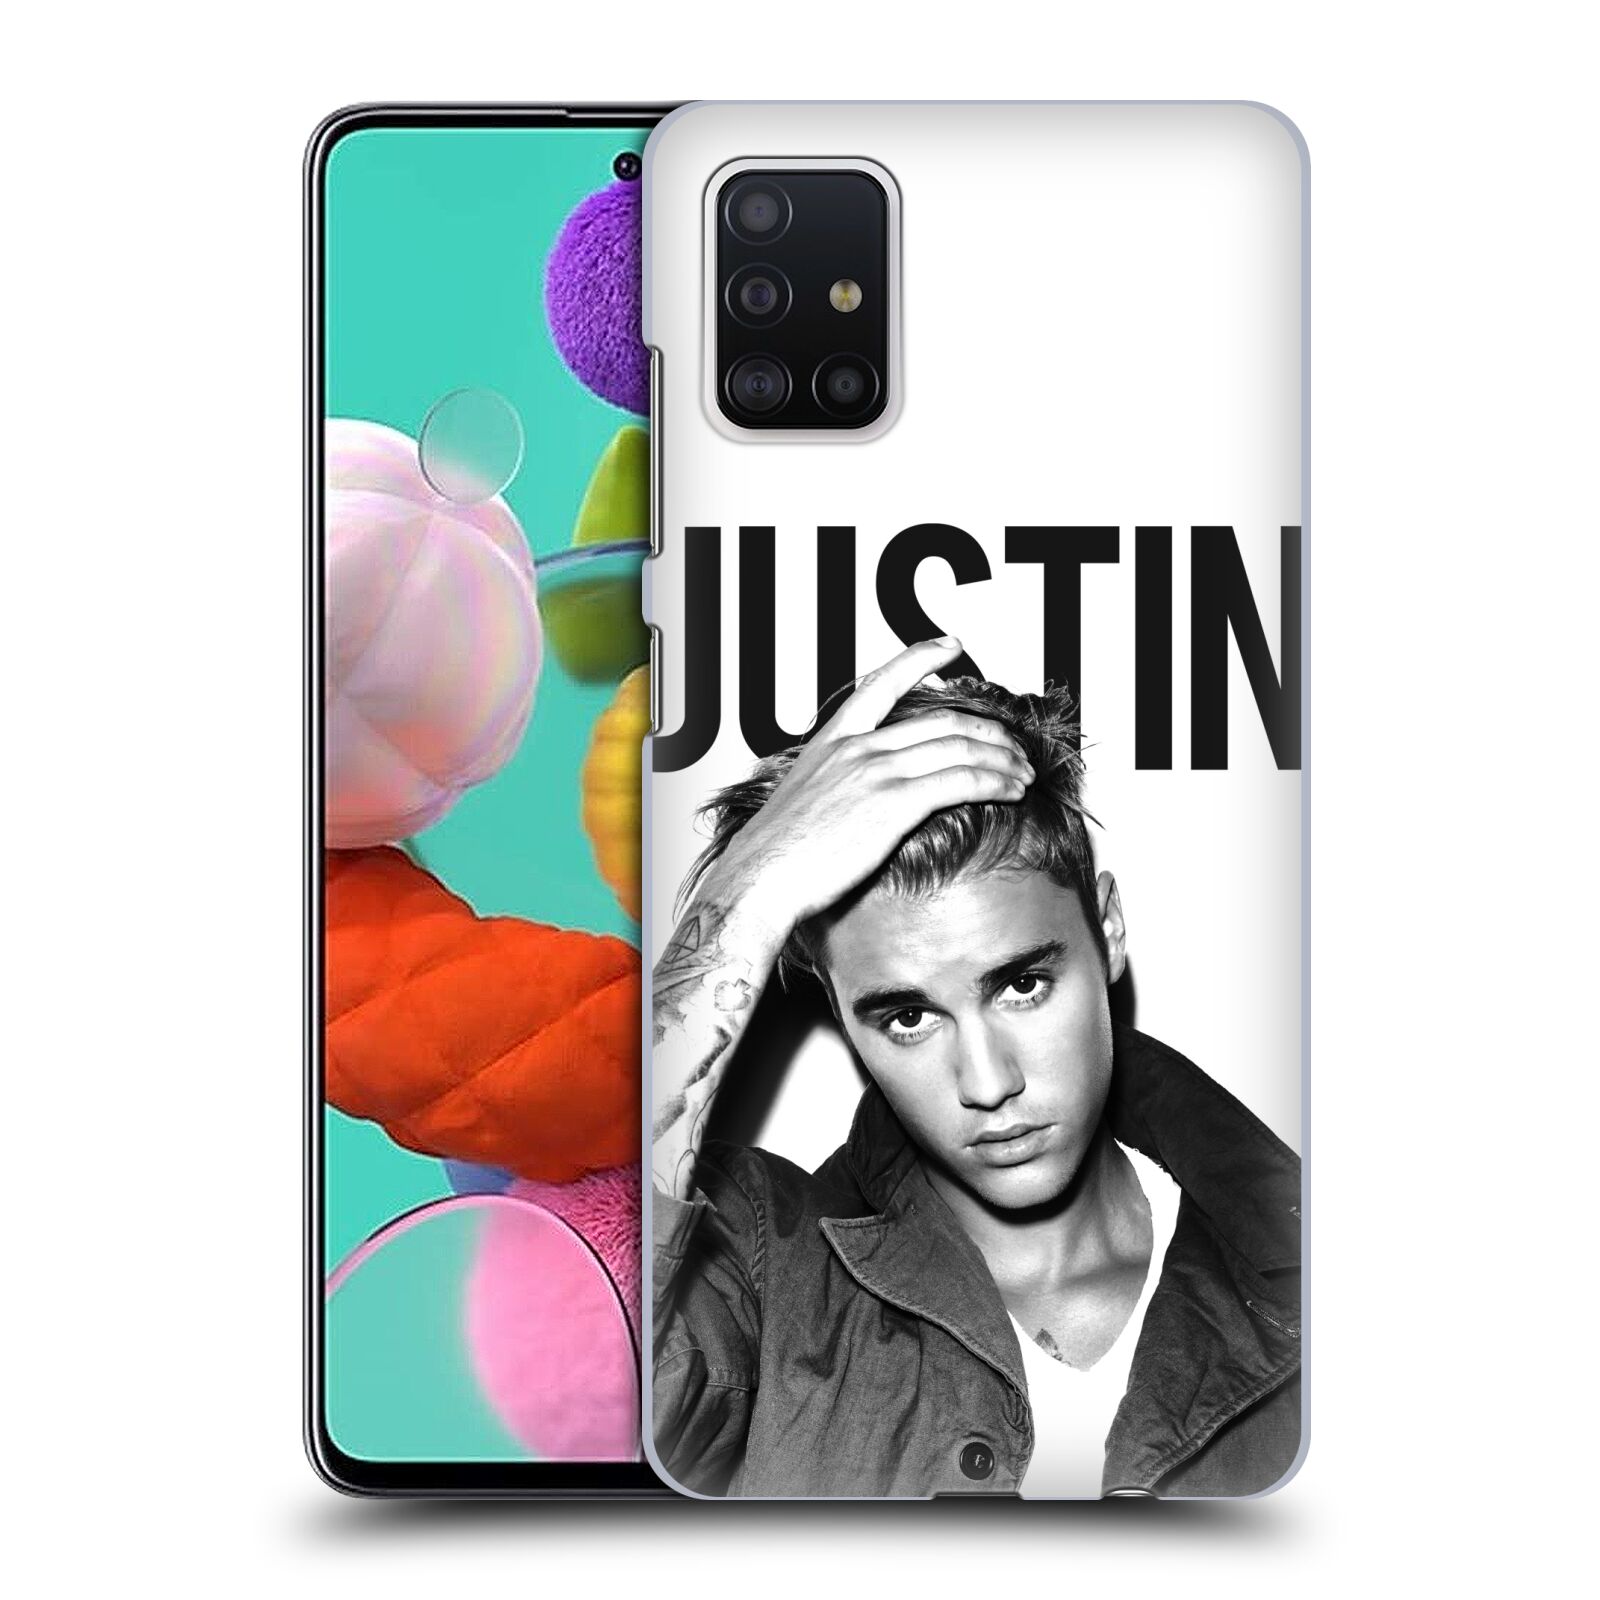 Pouzdro na mobil Samsung Galaxy A51 - HEAD CASE - Justin Bieber foto Purpose černá a bílá